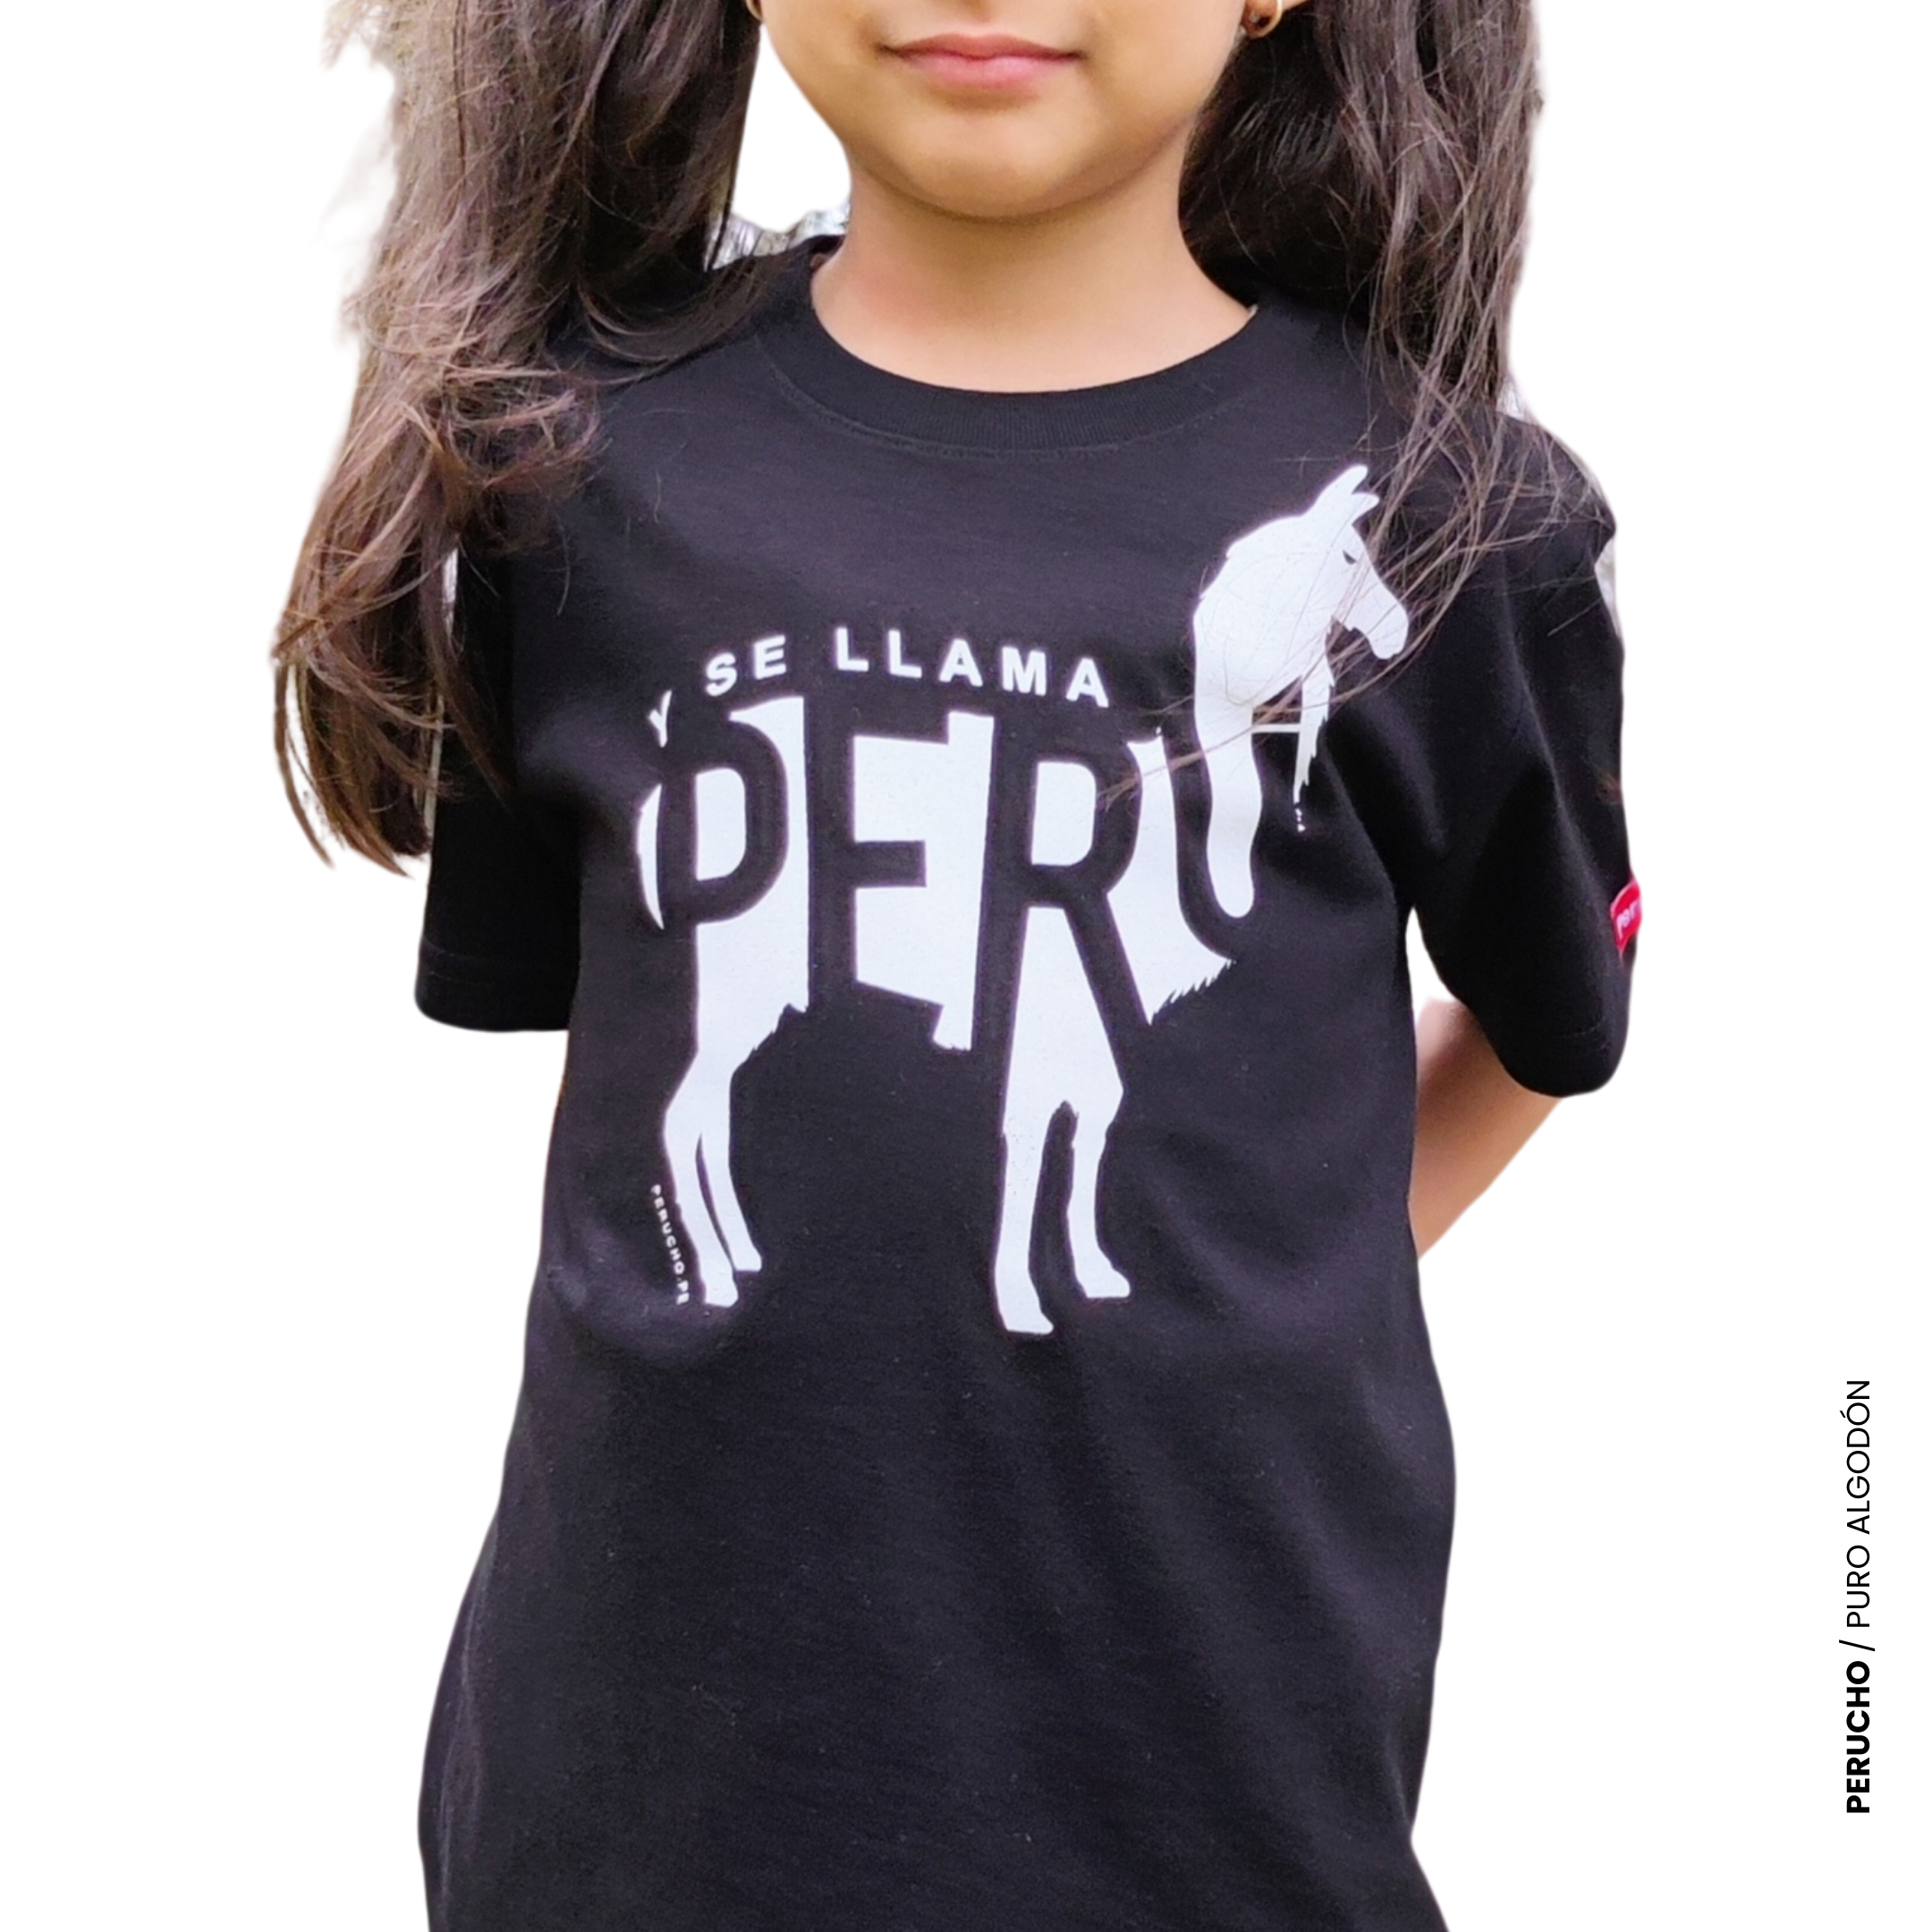 camioneta Groenlandia ingresos Polo de niño unisex y se llama Perú - Perucho, polos y gorras con diseños  peruanos